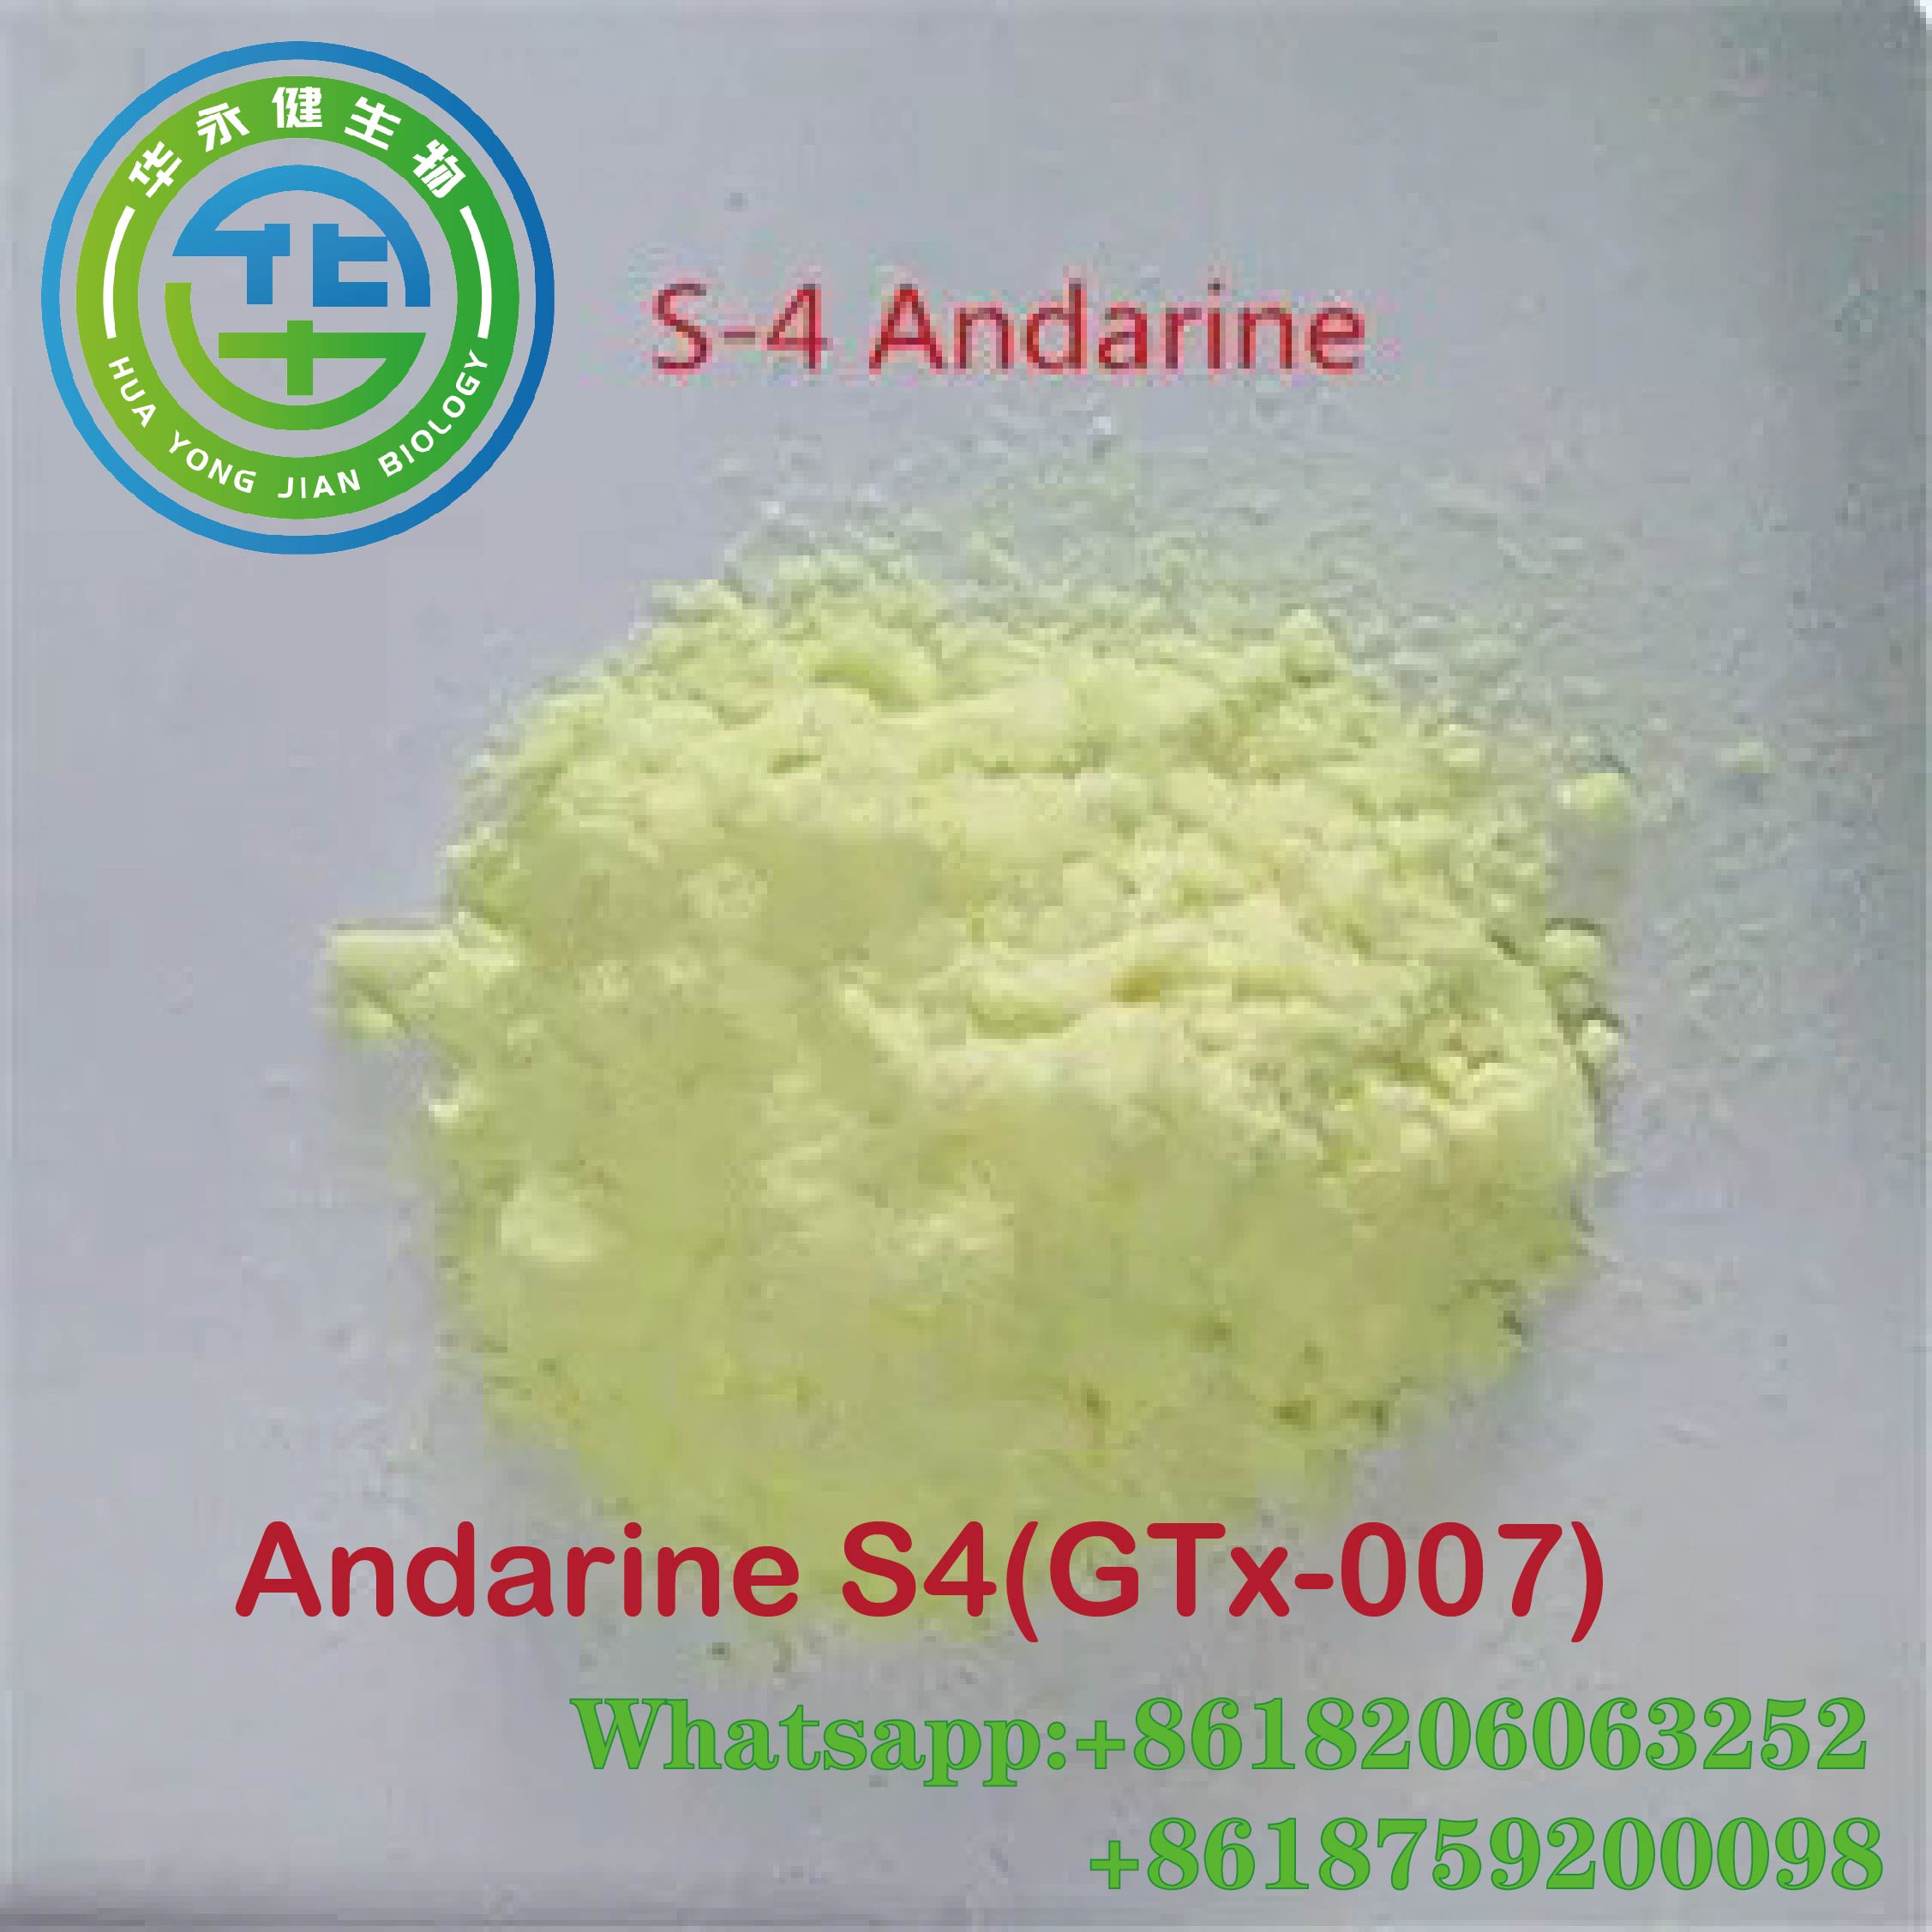 Andarine S4 Sarm Powder Steroids Foda CasNO.401900-40-1 Fakitin Stealth 100% Garanti na jigilar kaya Peptides